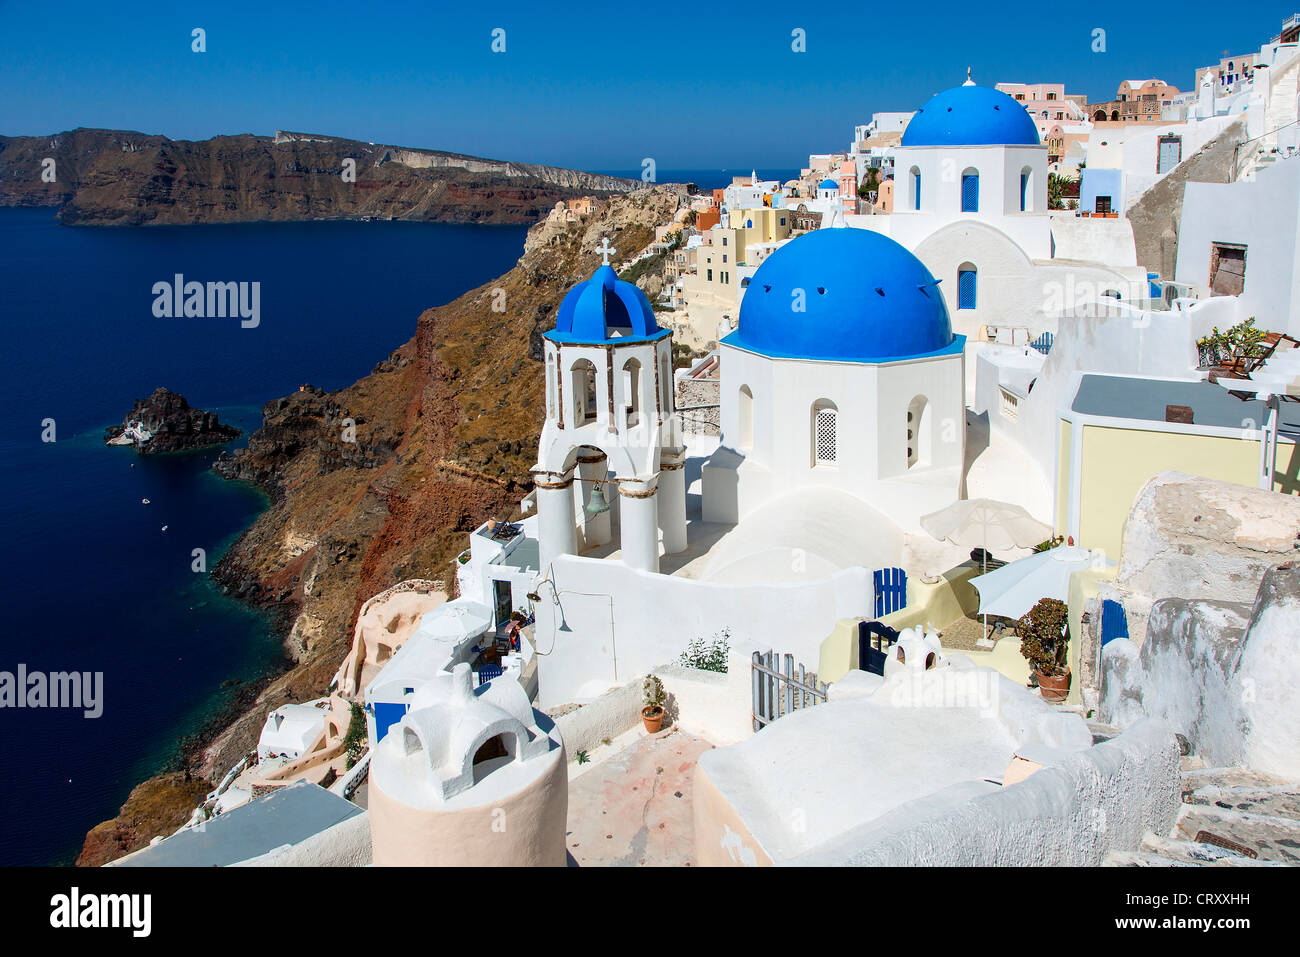 Grecia Santorini Oia cúpula azul de la Iglesia Ortodoxa Foto de stock